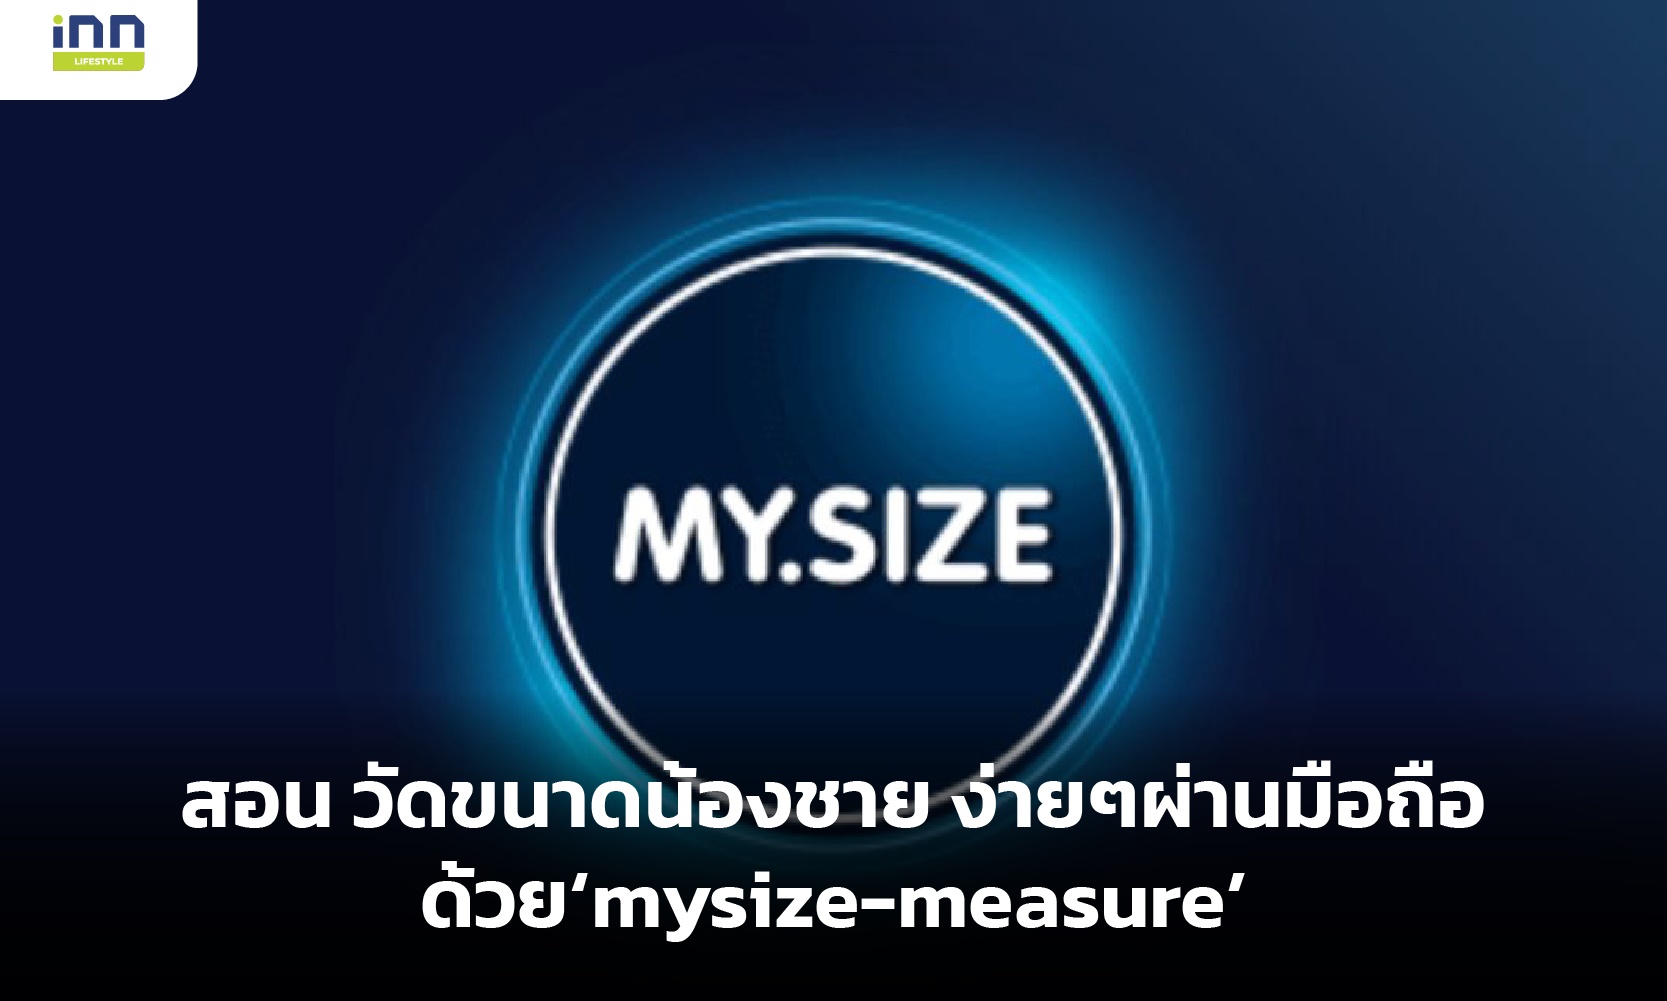 สอน วัดขนาดน้องชาย ง่ายๆผ่านมือถือด้วย ‘mysize-measure’